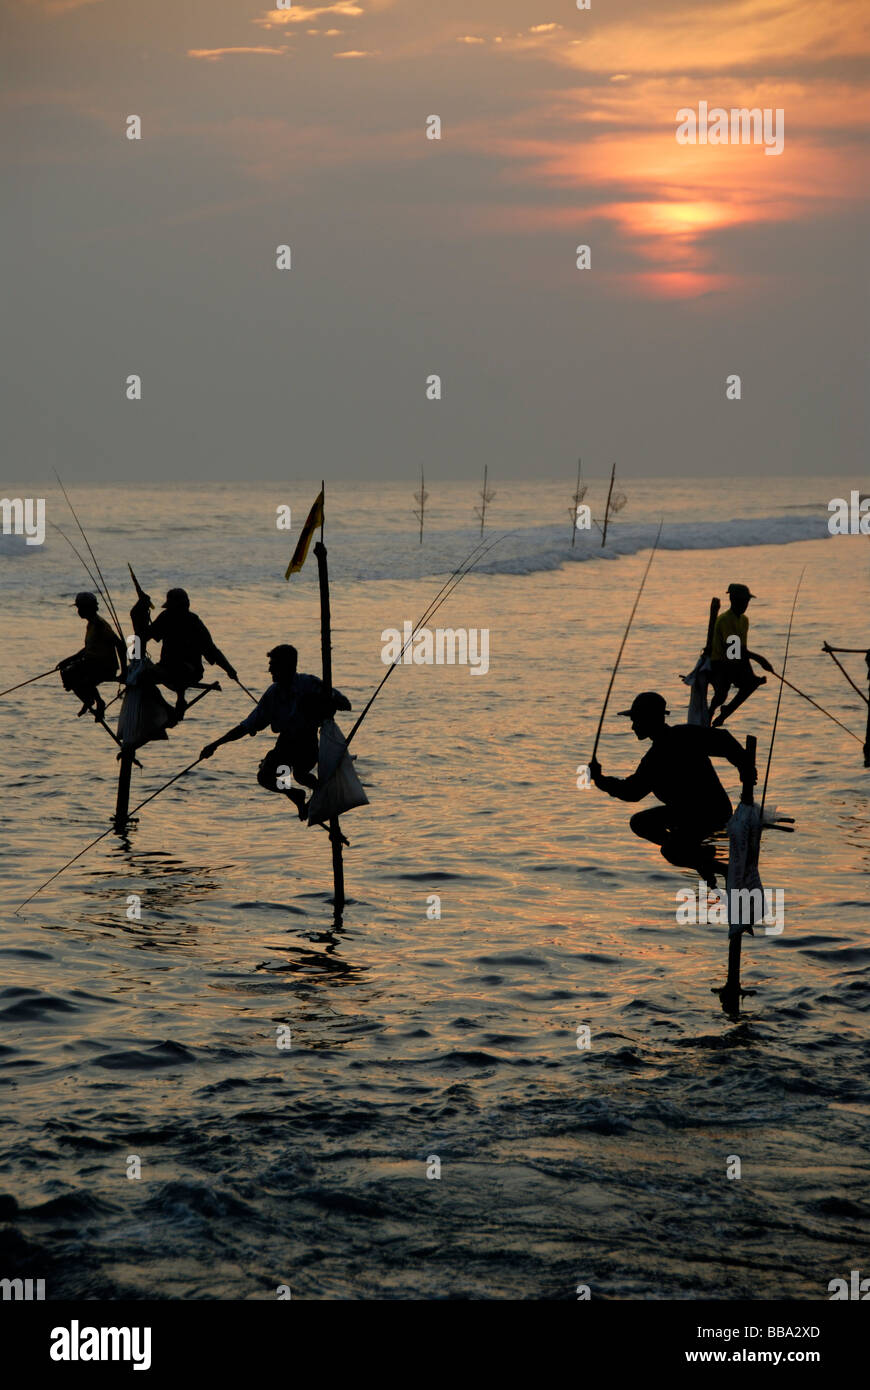 Stelzenfischer Fischer, Sonnenuntergang, auf Stelzen Angeln im seichten Wasser, Indischer Ozean, Ceylon, Sri Lanka, Südasien, Asien Stockfoto